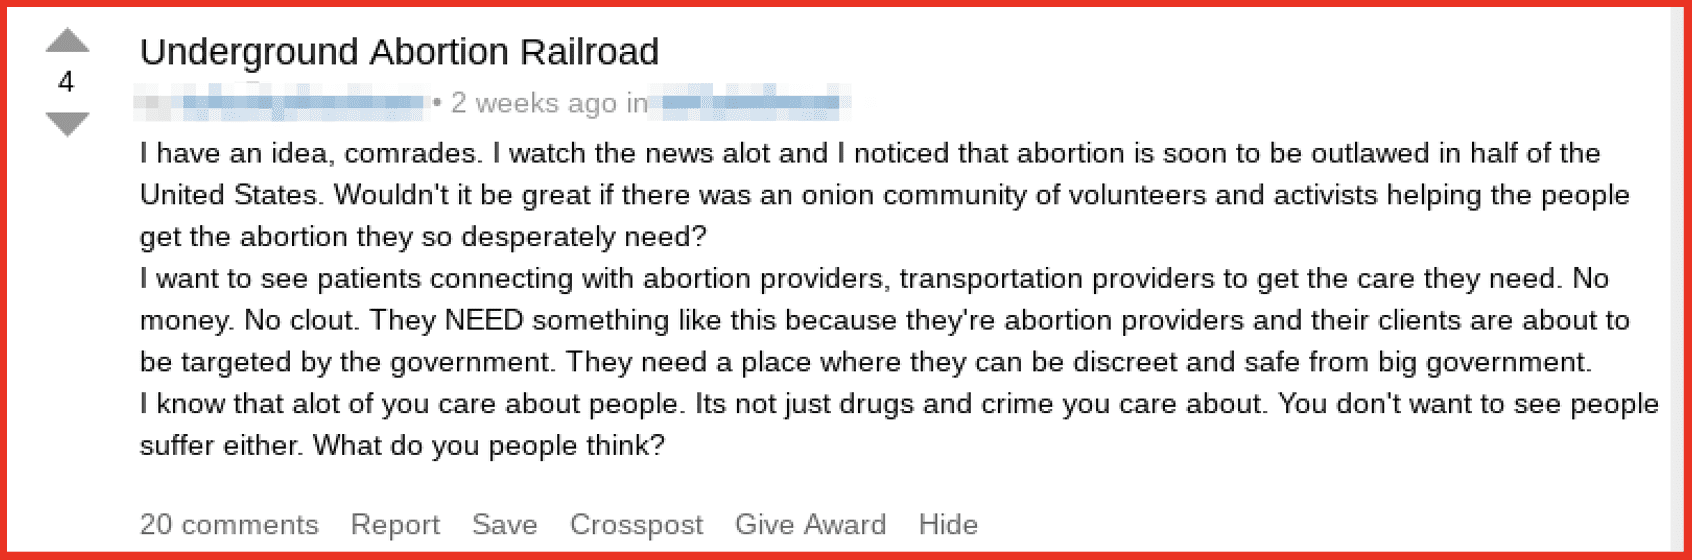 Underground Abortion Railroad